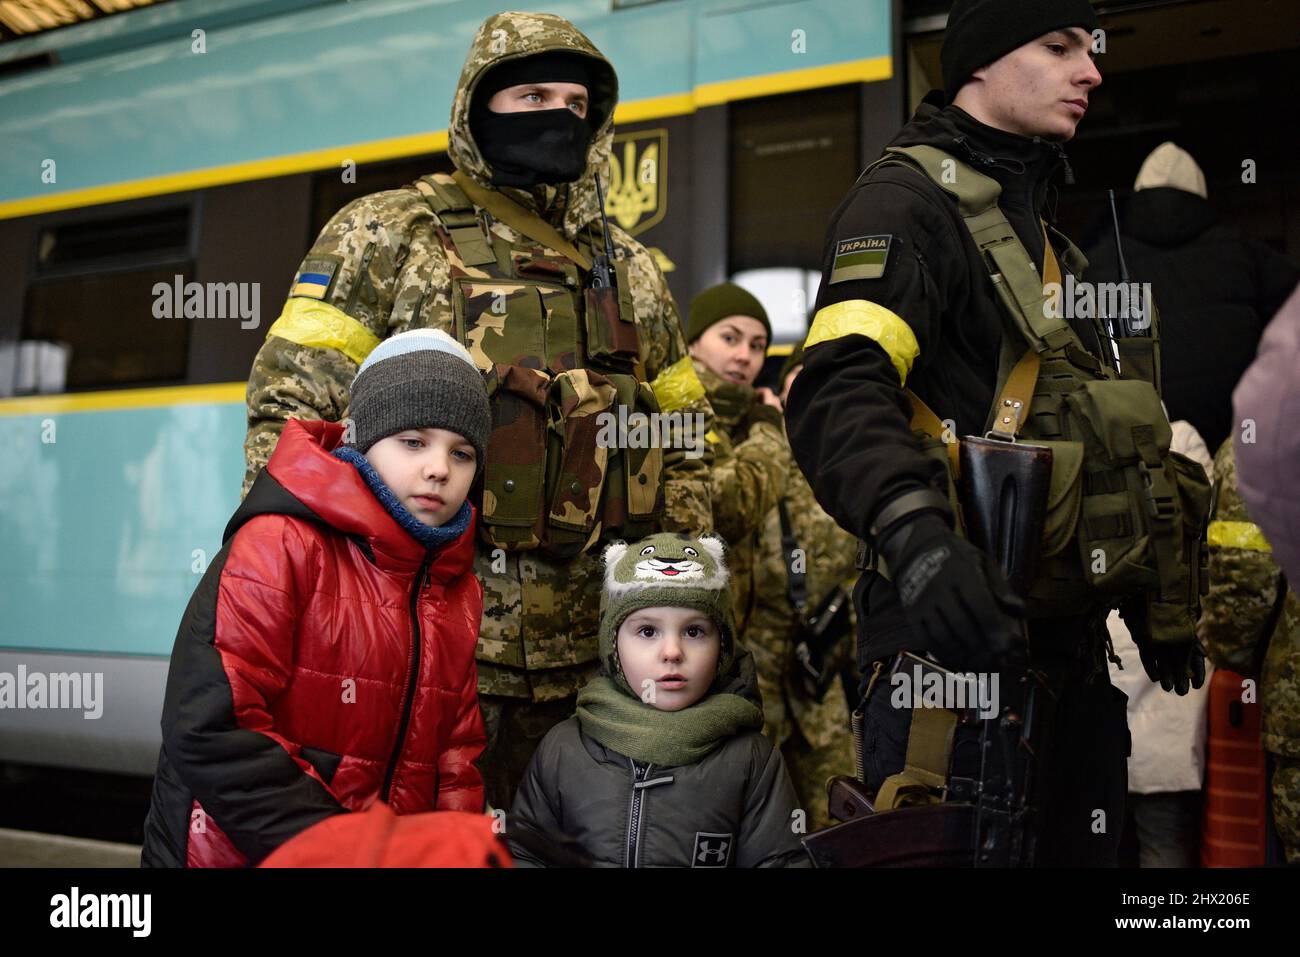 LVIV, UKRAINE - 28. FEBRUAR 2022 - zwei Kinder stehen vor Soldaten auf dem Bahnsteig am Bahnhof von Lviv, als Flüchtlinge, die vor Feindseligkeiten fliehen Stockfoto